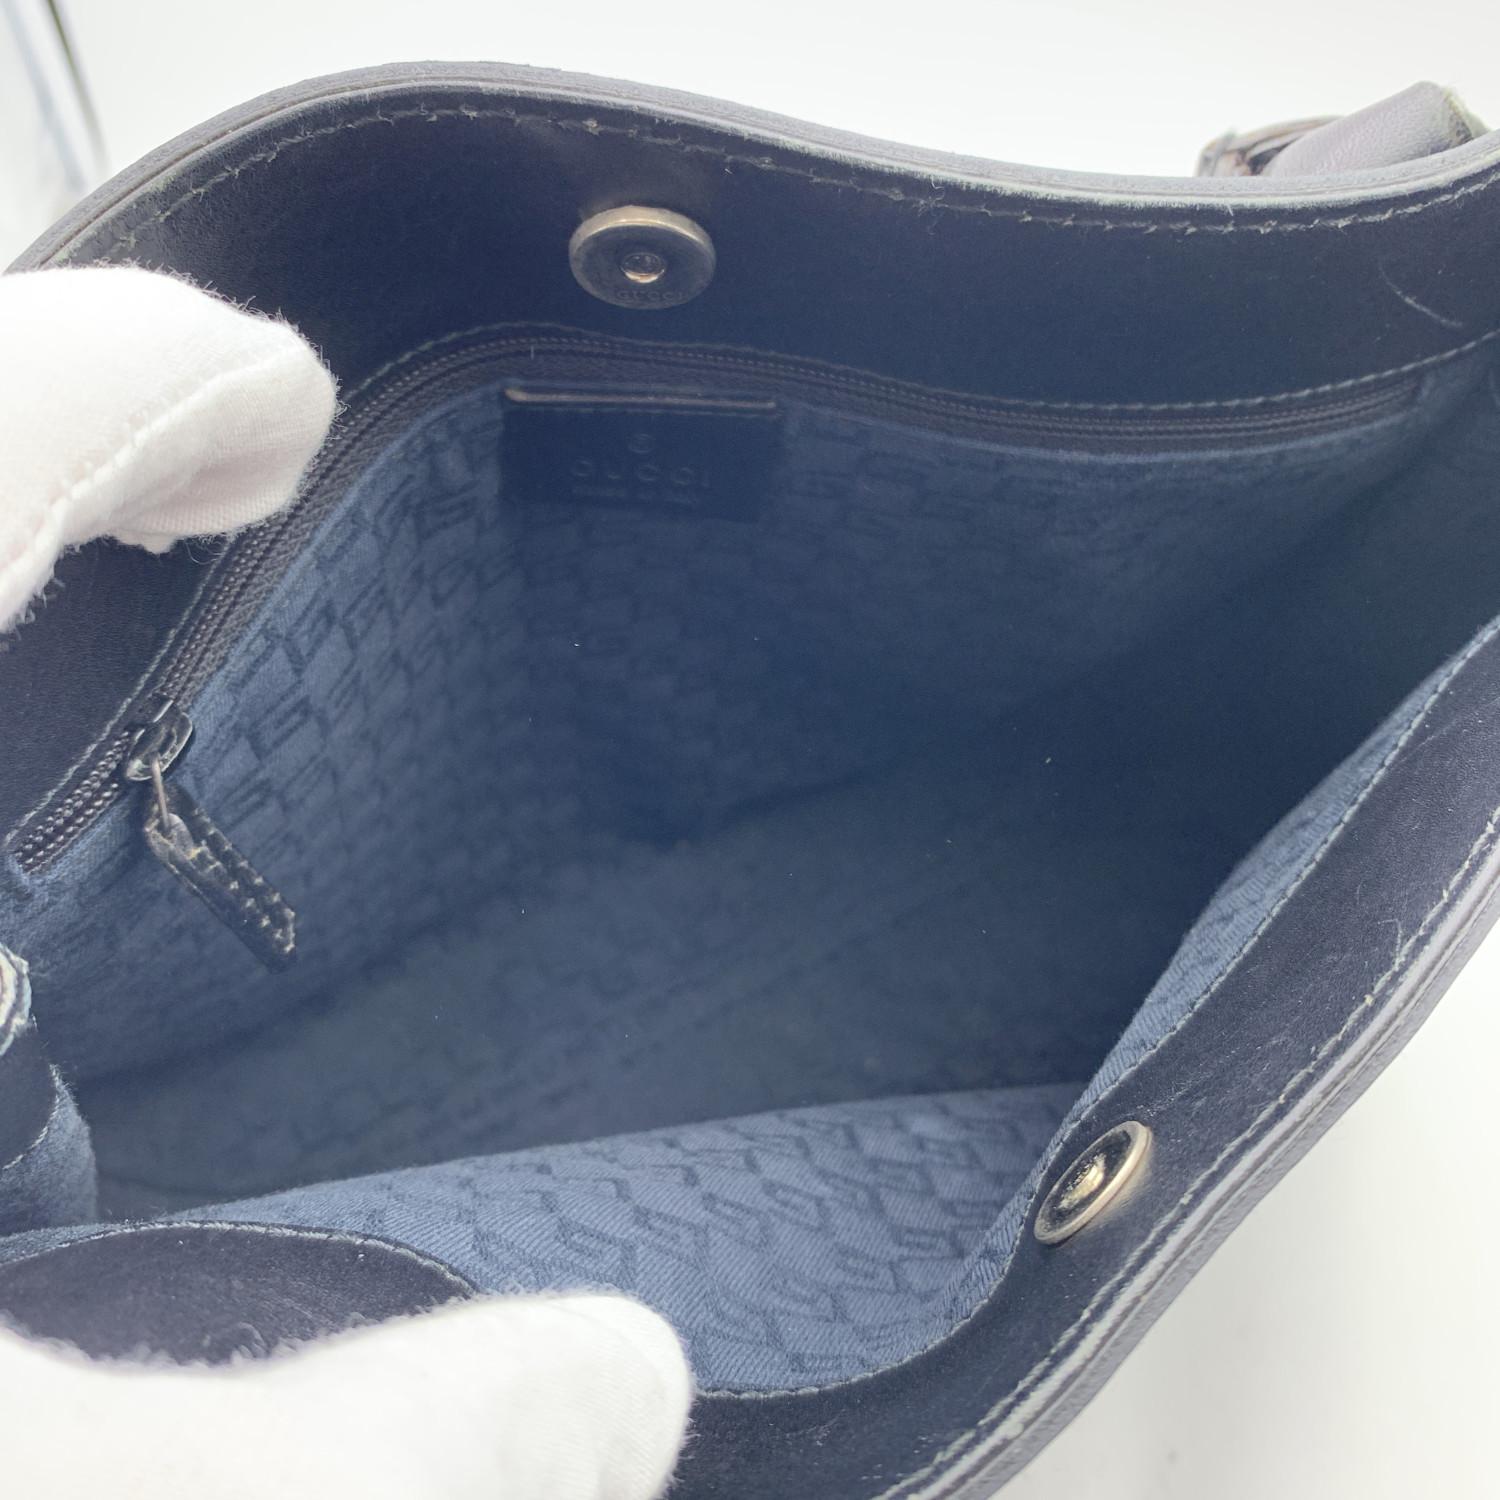 Gucci Black Leather Horsebit Detailing Tote Shoulder Bag 2